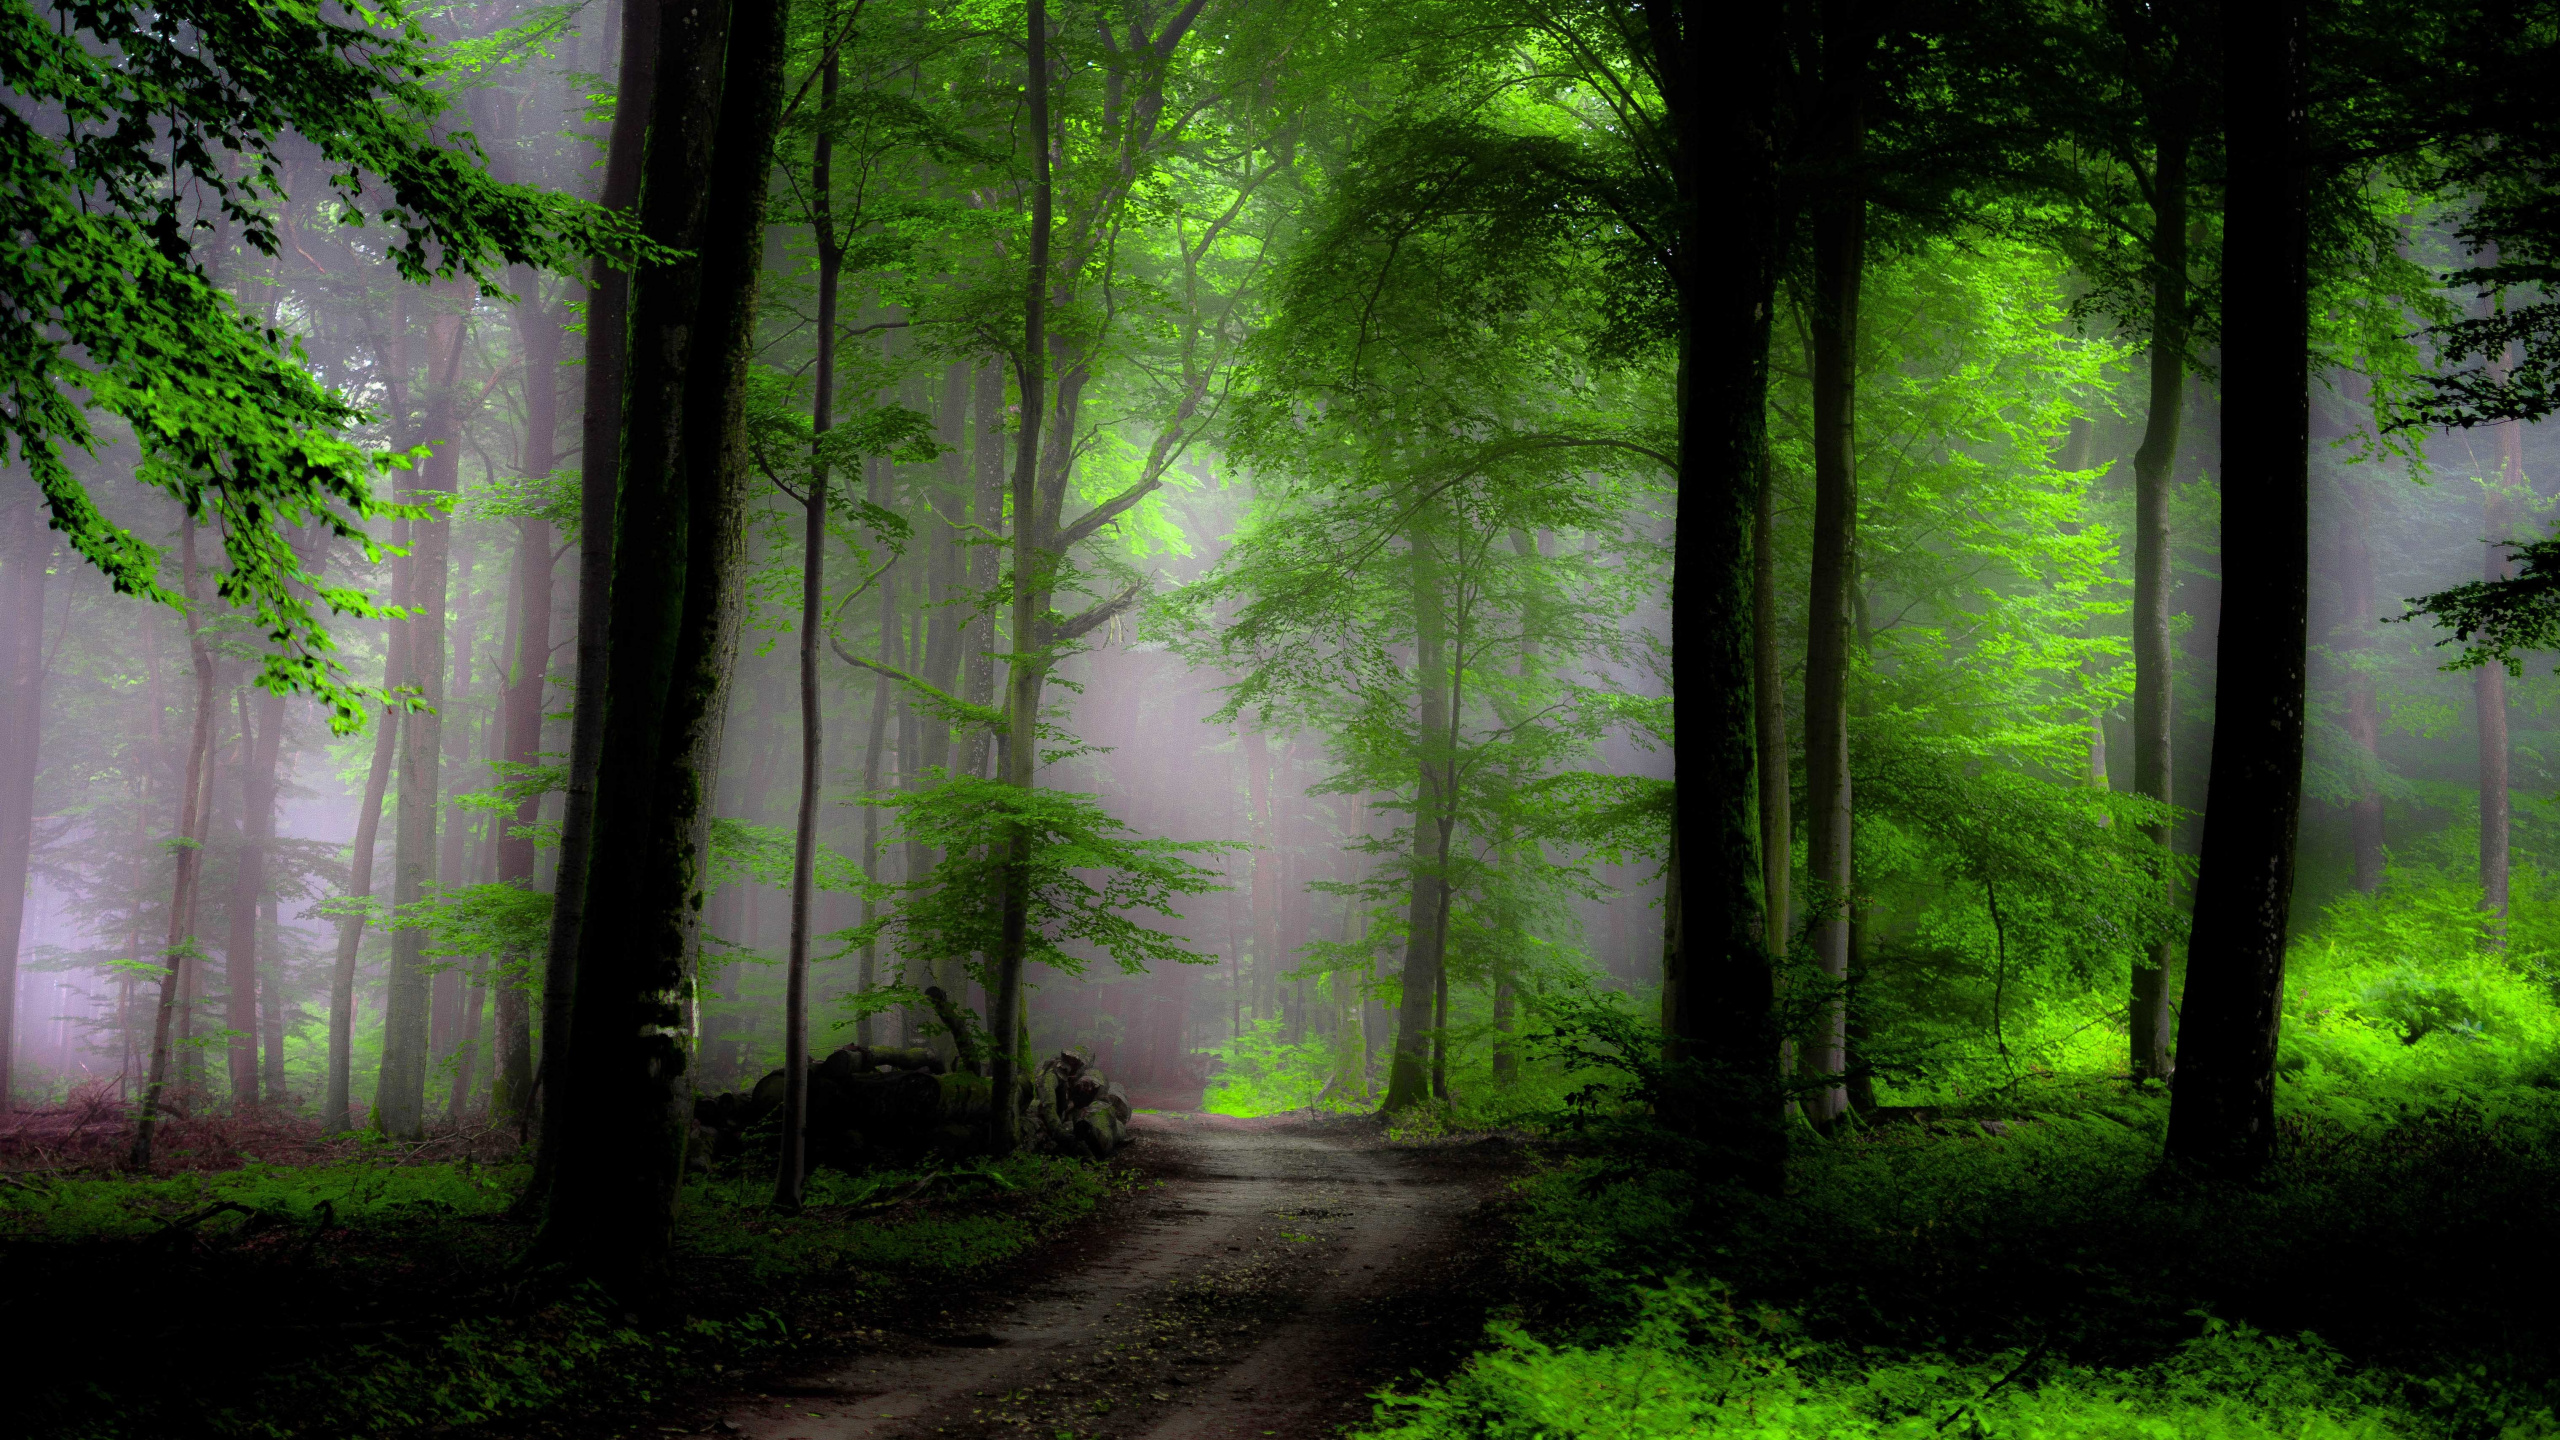 壁画, 森林, 性质, 绿色的, 林地 壁纸 2560x1440 允许